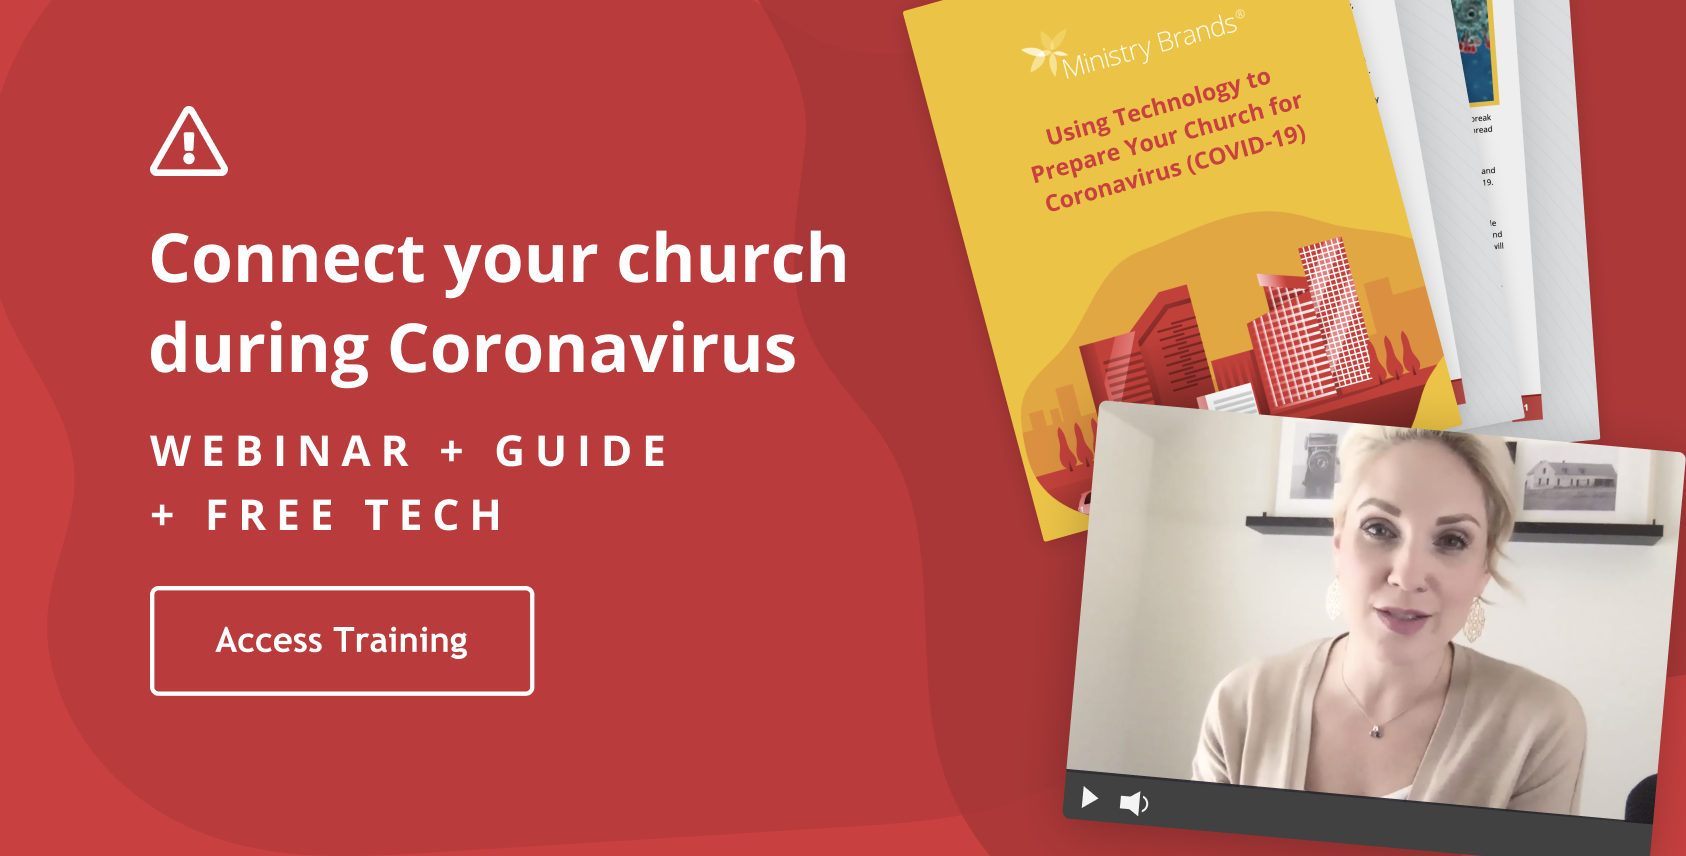 Church Resources for Coronavirus